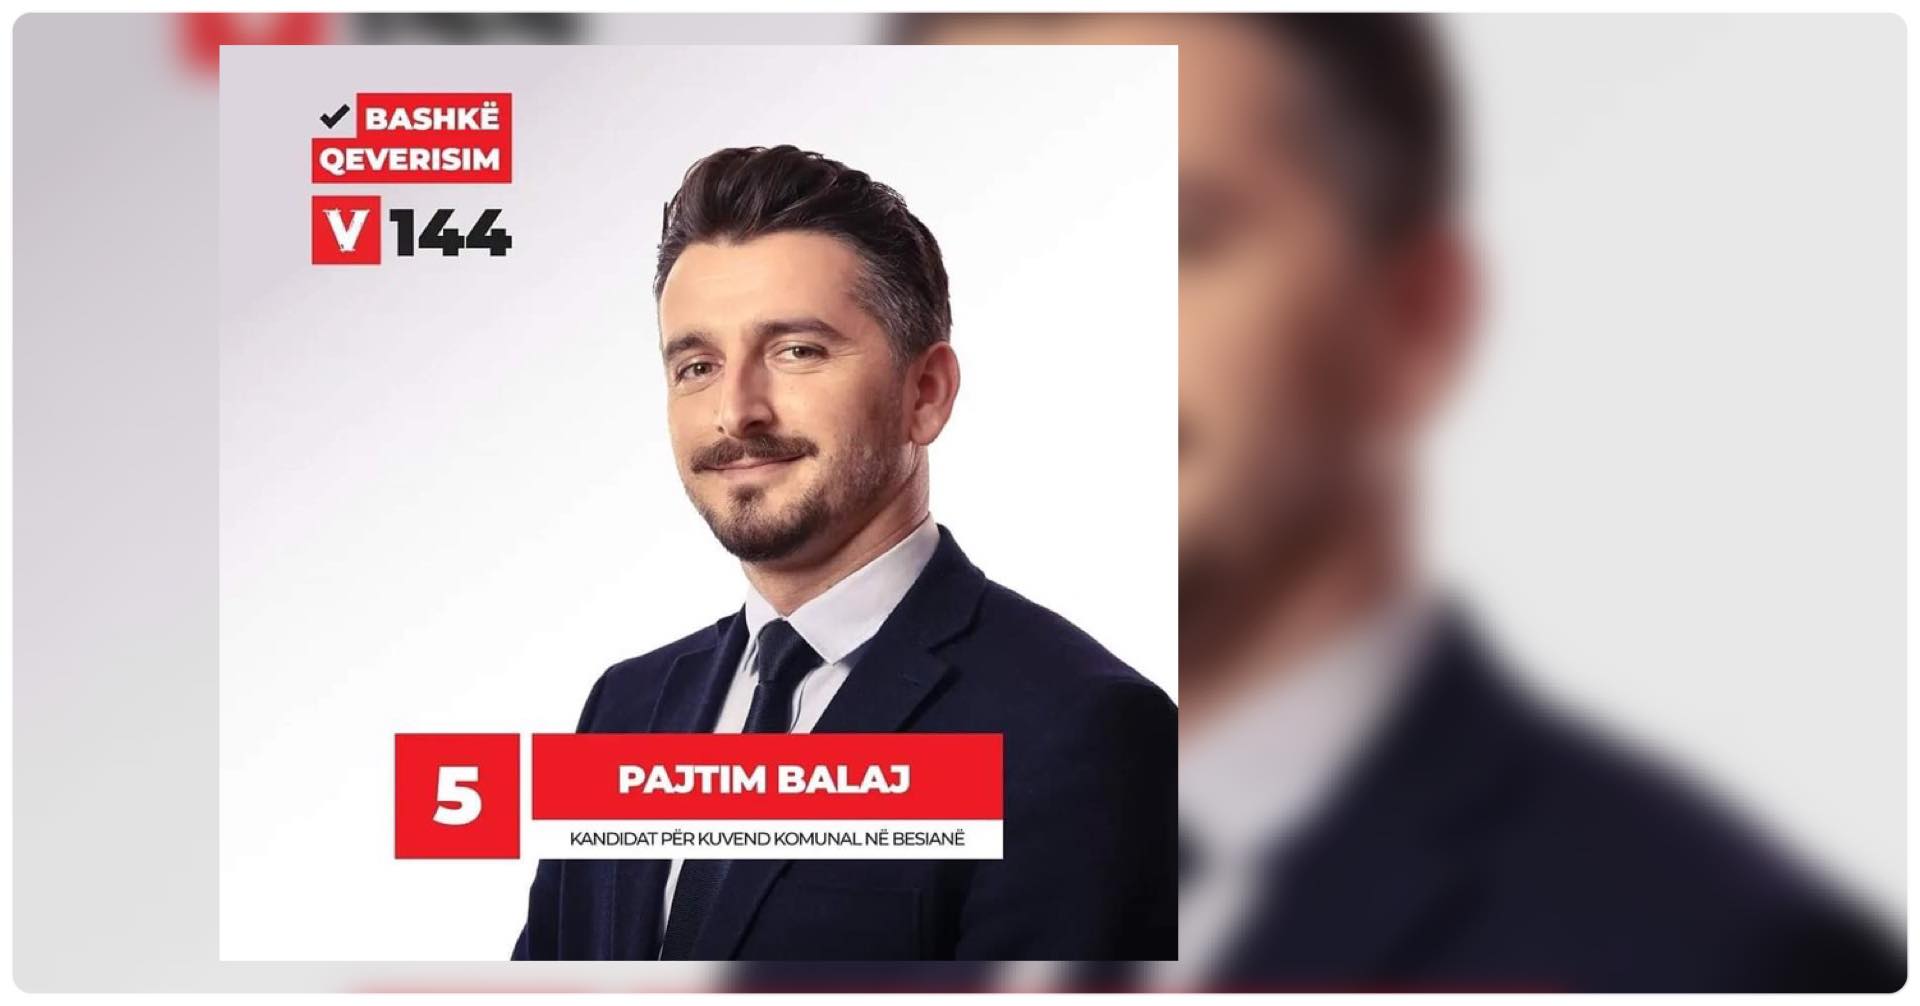  Pajtim Balaj, kandidat për asamble komunale i Lëvizjes VETËVENDOSJE! në Podujevë, me numër 5